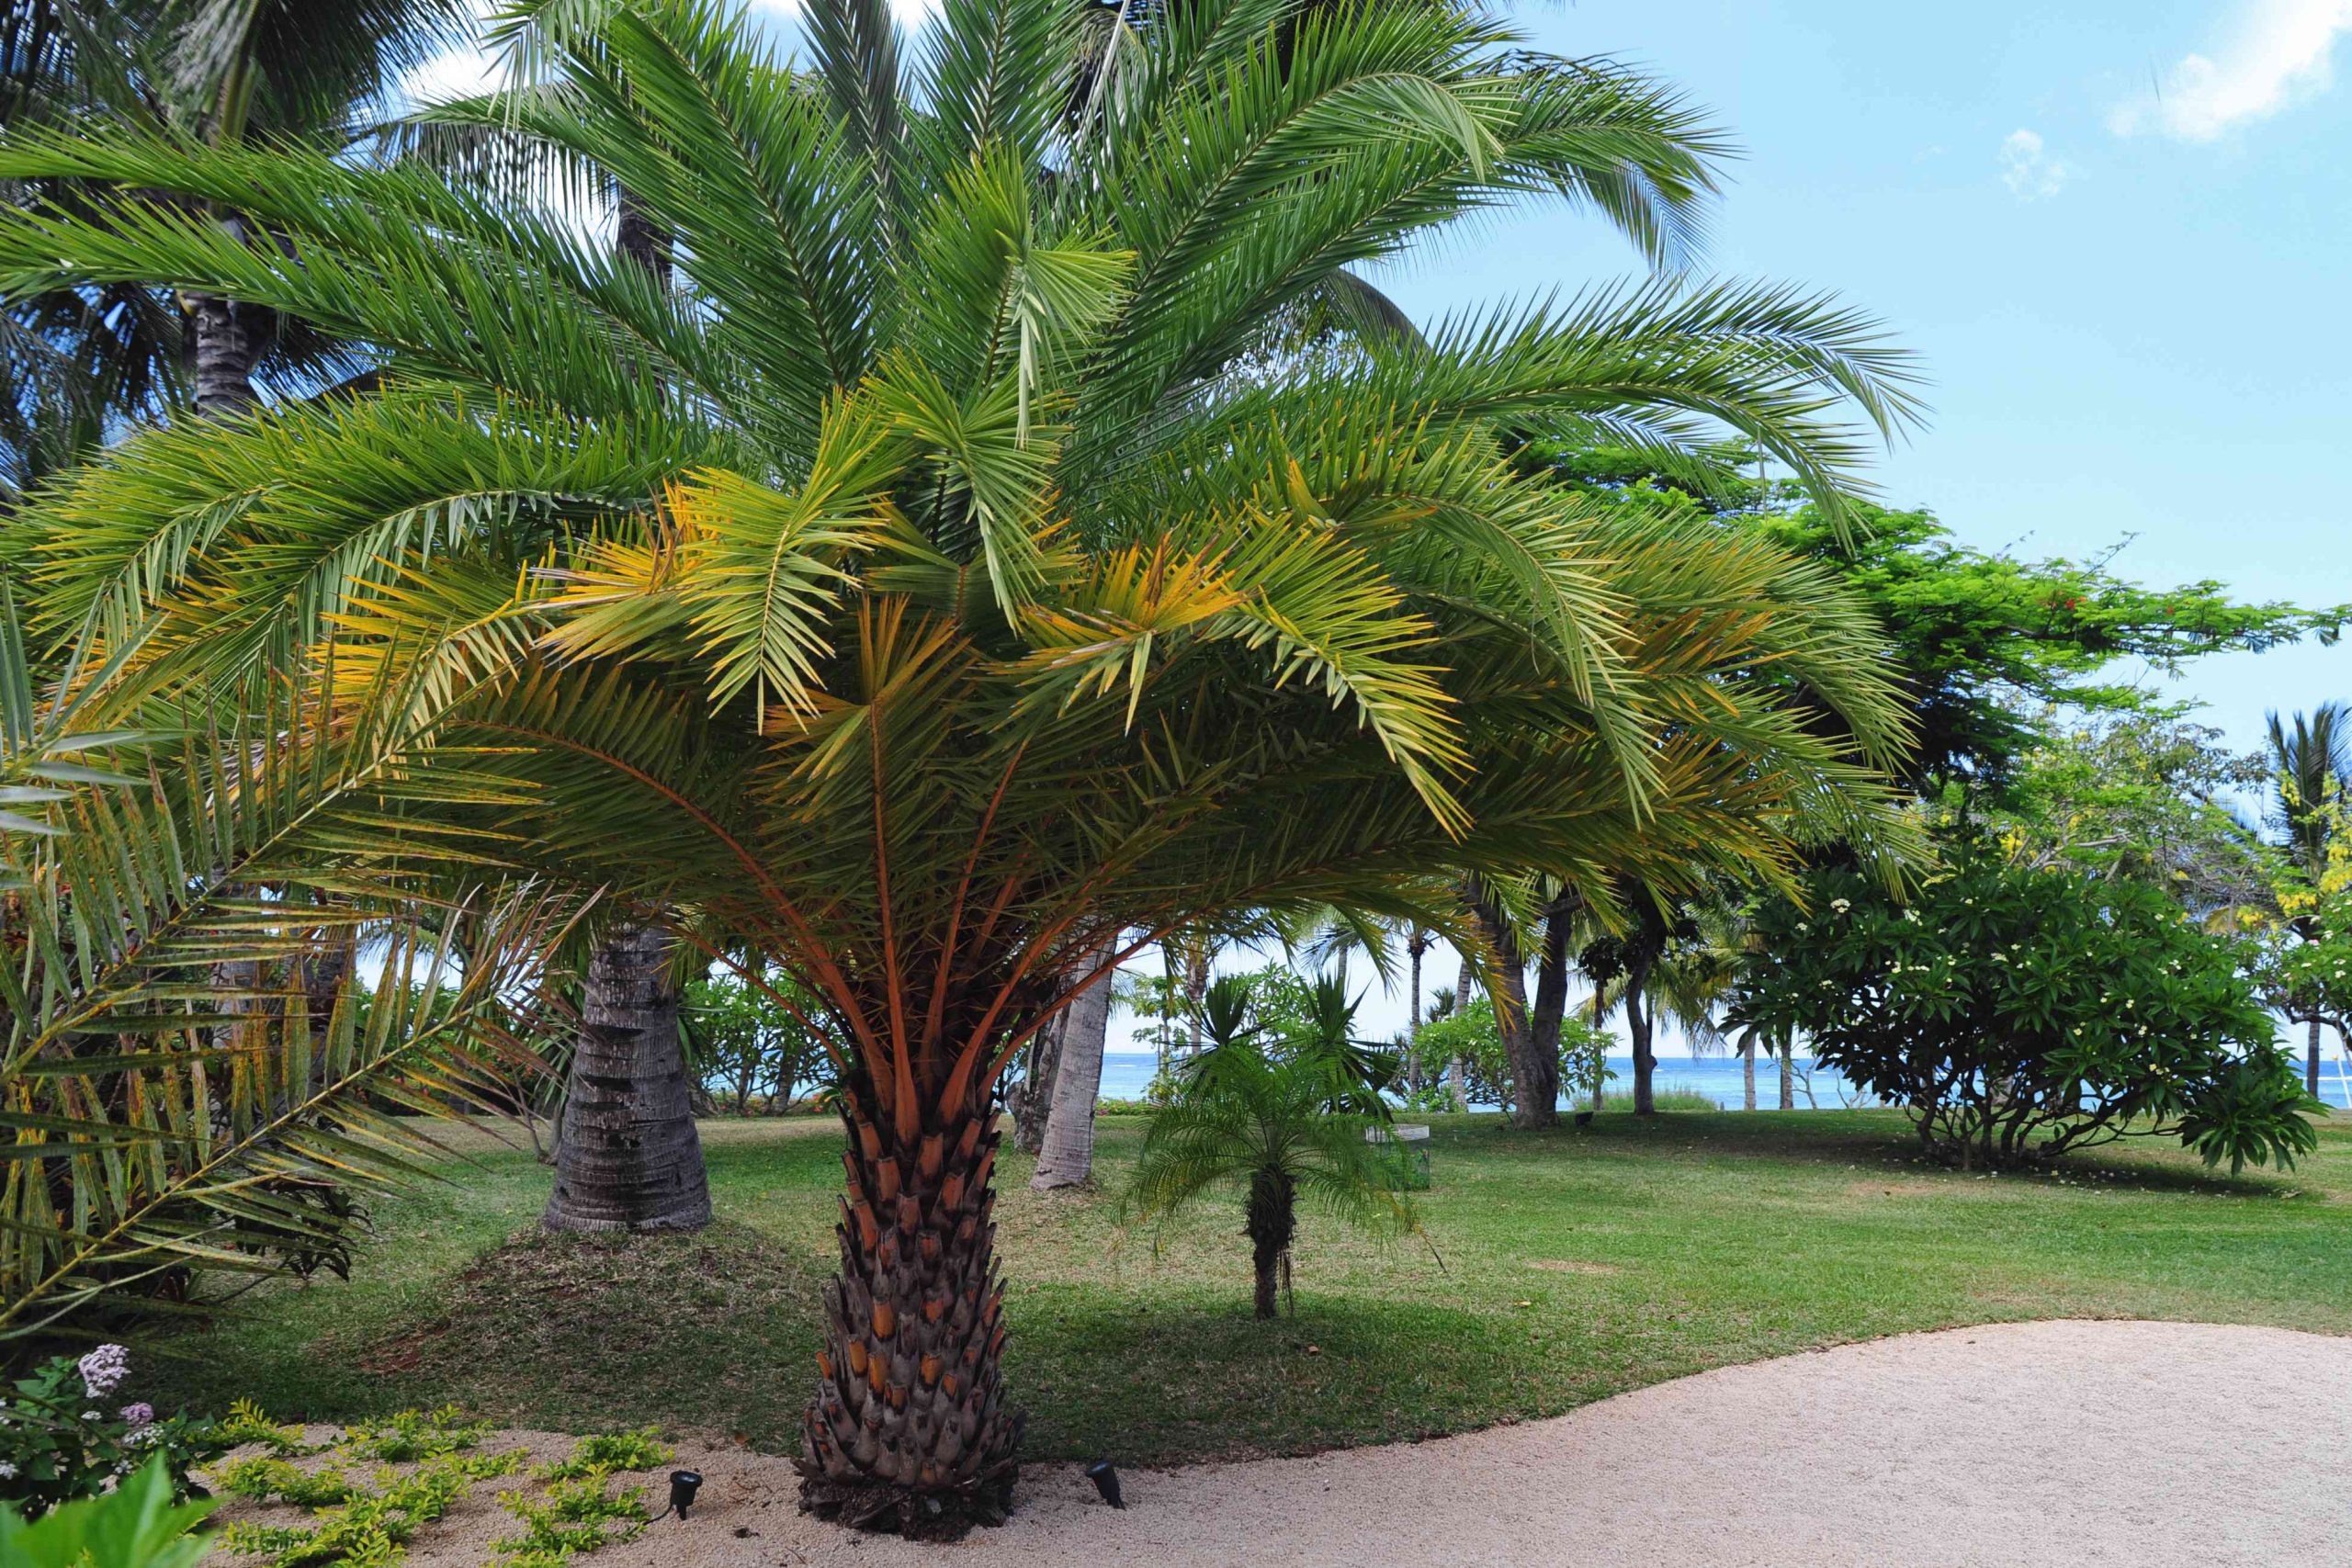 Hardy Fan Palms in Garden